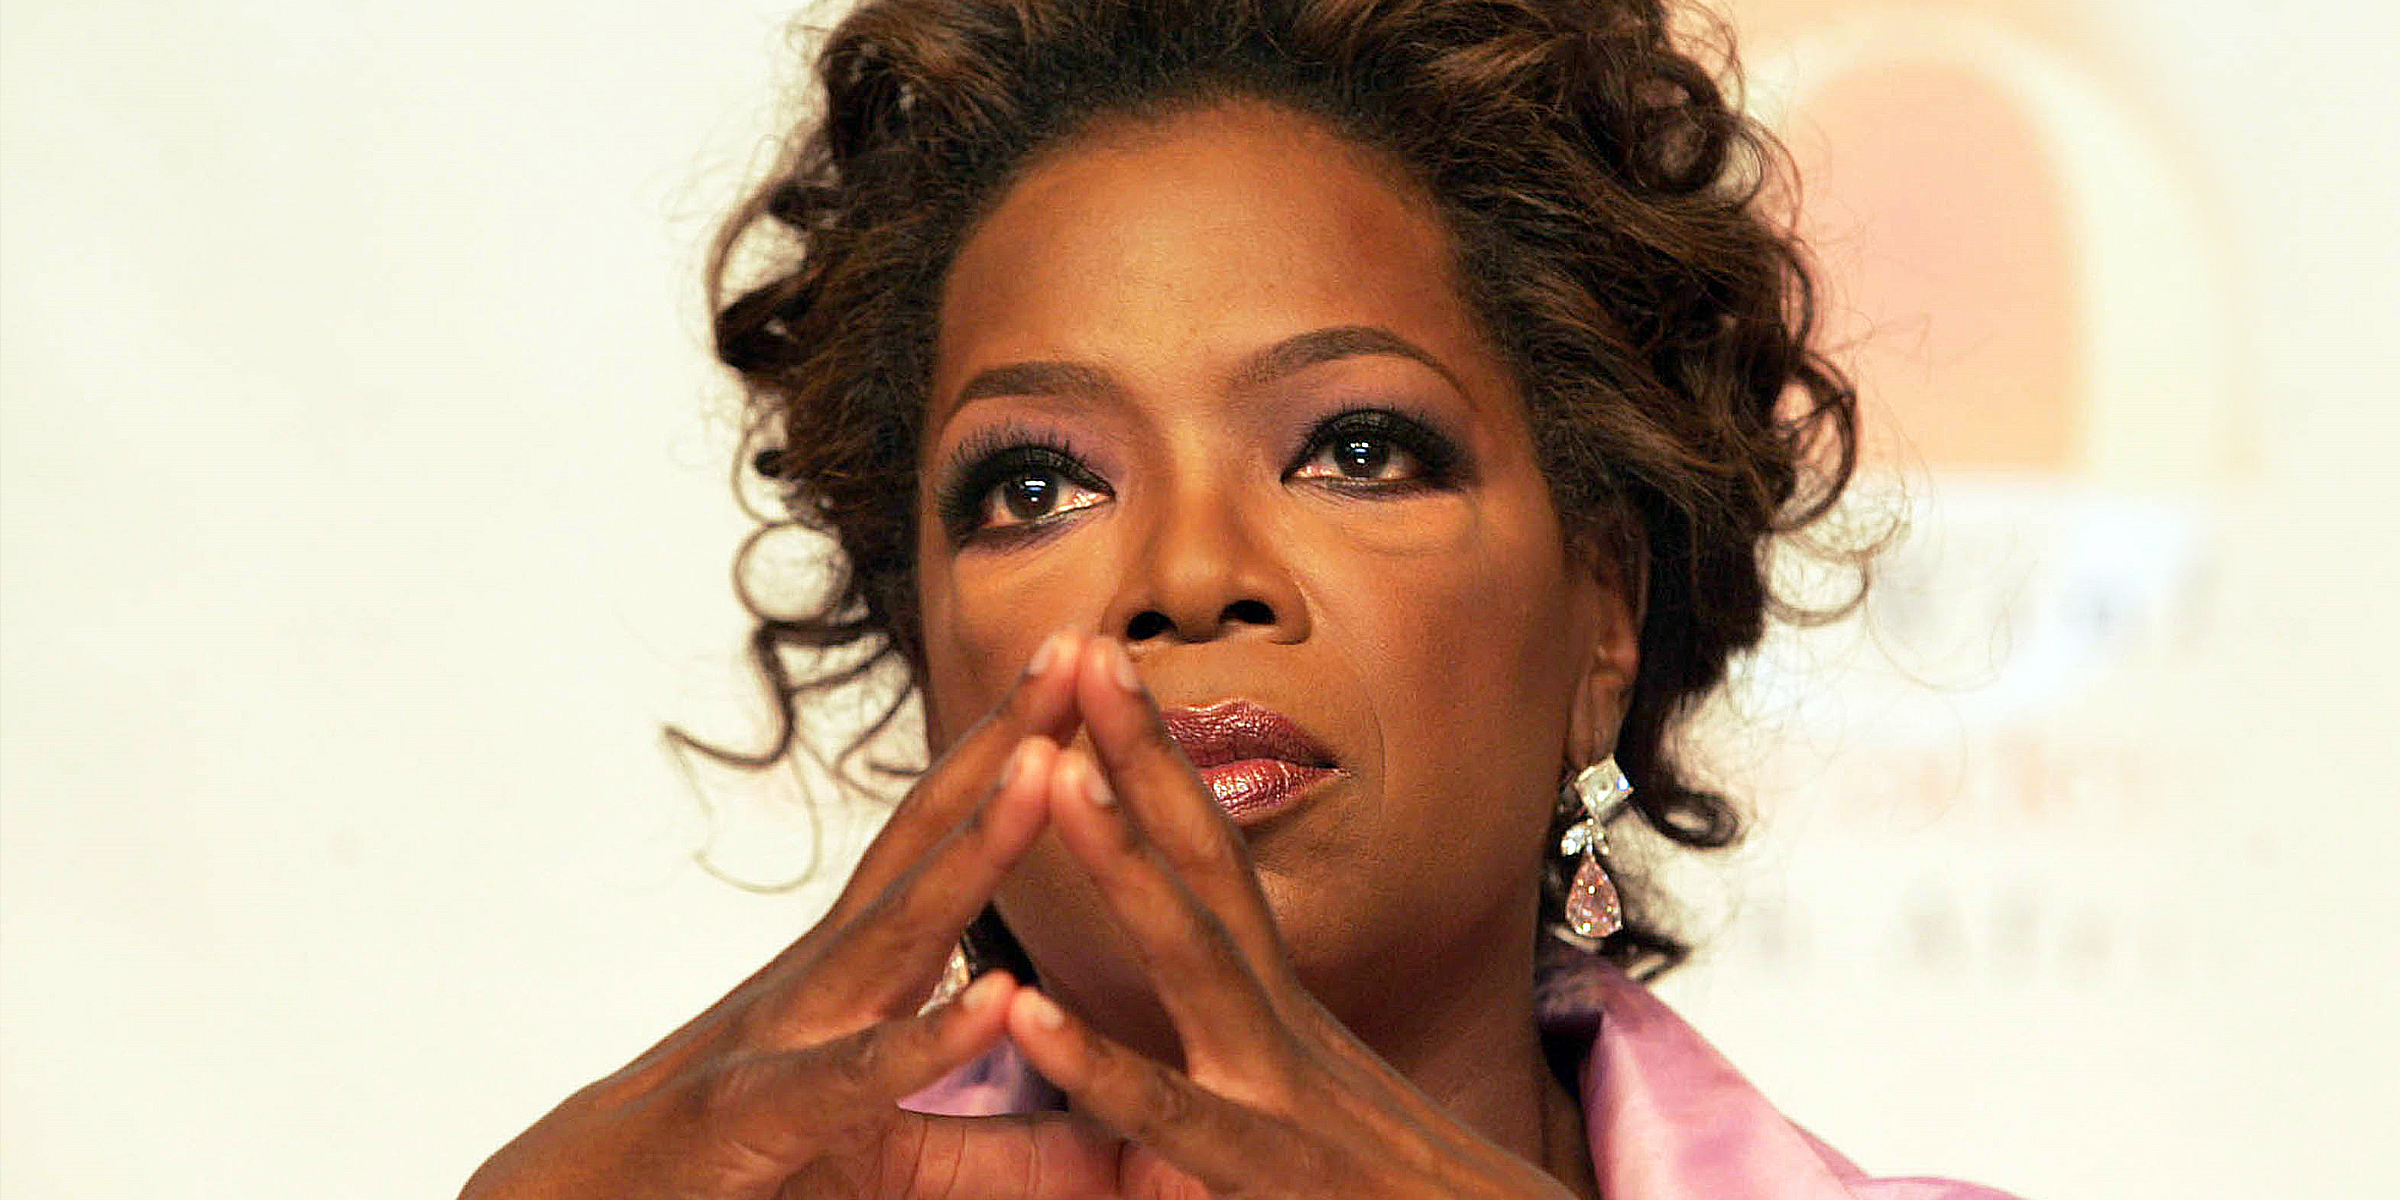 Oprah Winfrey | Source: Getty Images